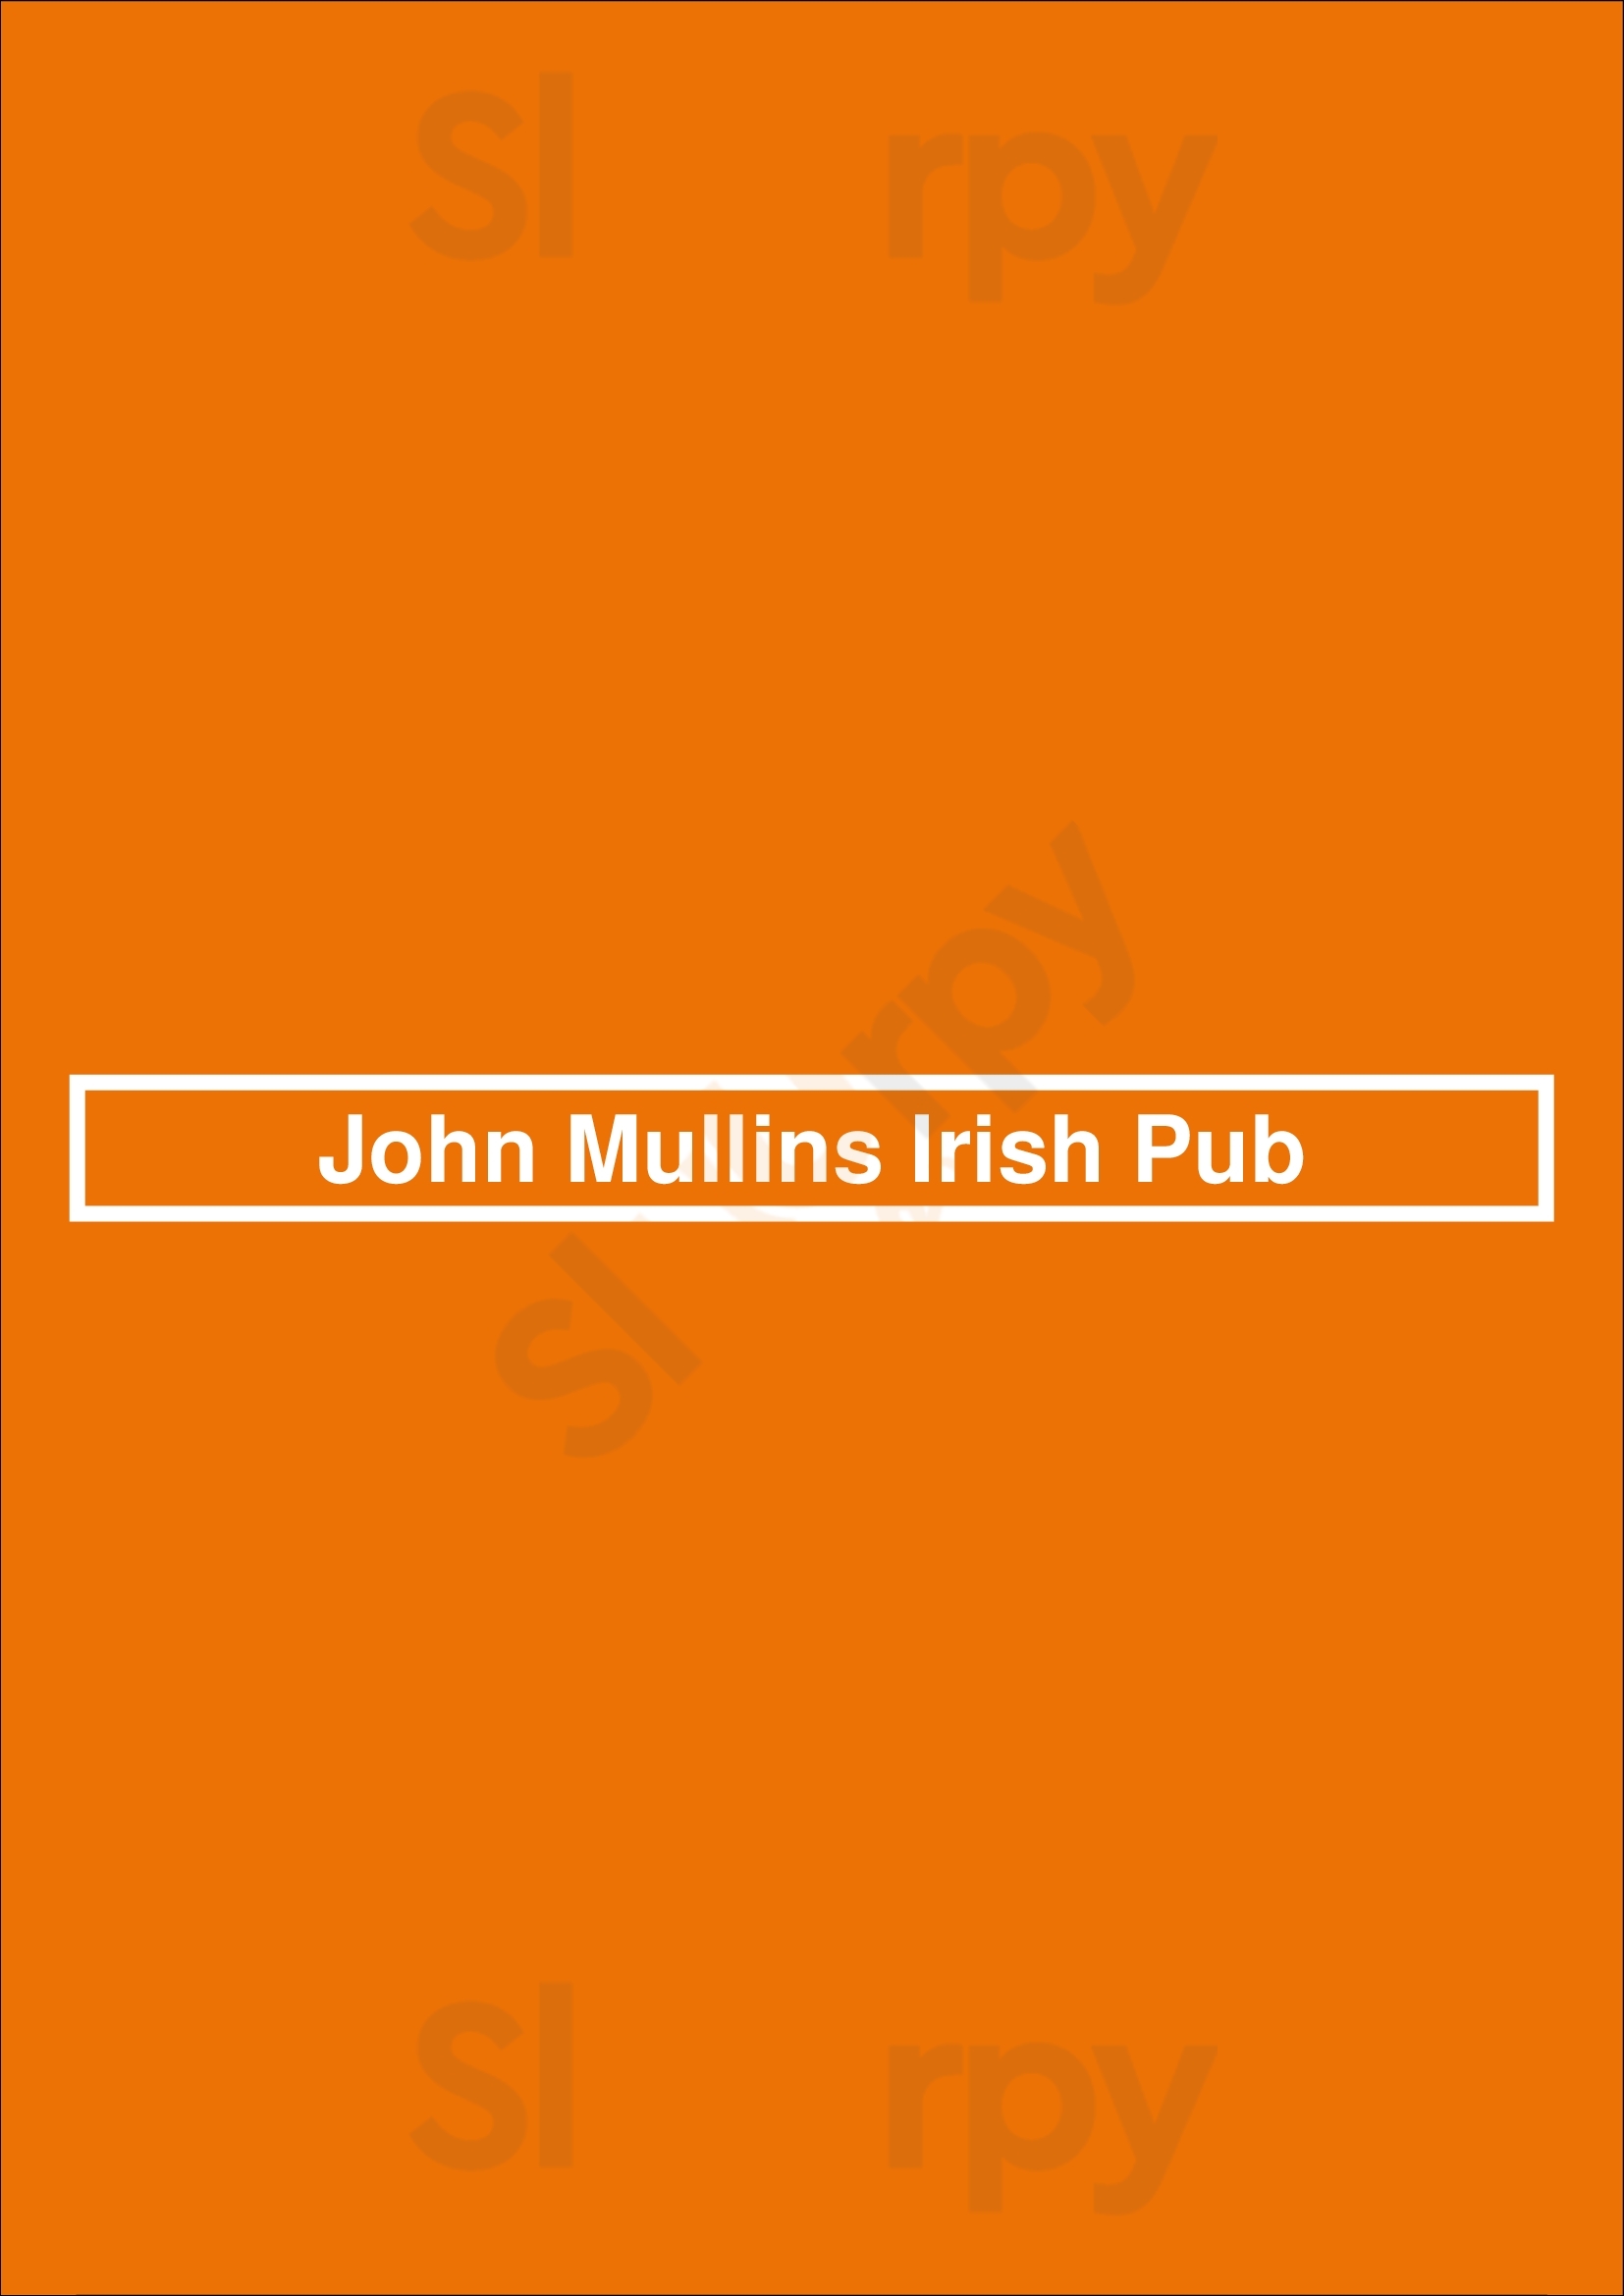 John Mullins Irish Pub Maastricht Menu - 1